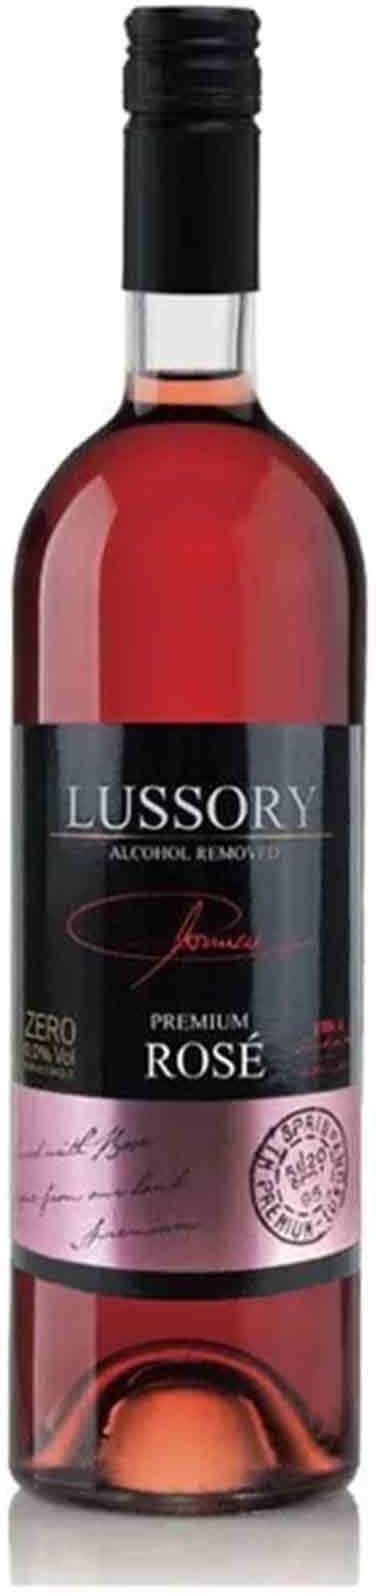 Lussory premium rose merlot 750ml